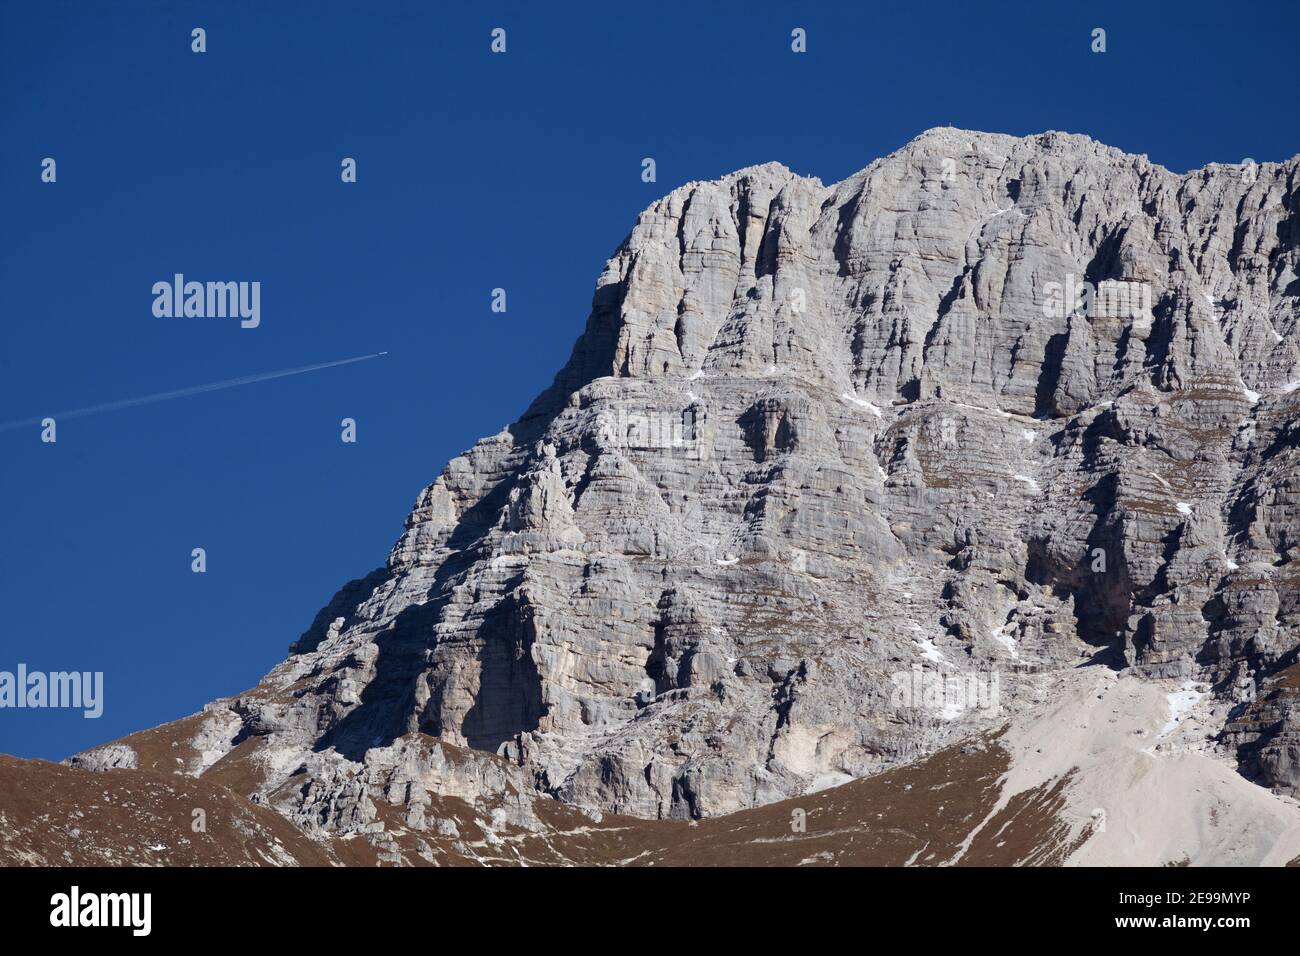 Empinadas laderas rocosas de la montaña Montaž en los Alpes Julianos con un avión volando sobre ella. Foto de stock